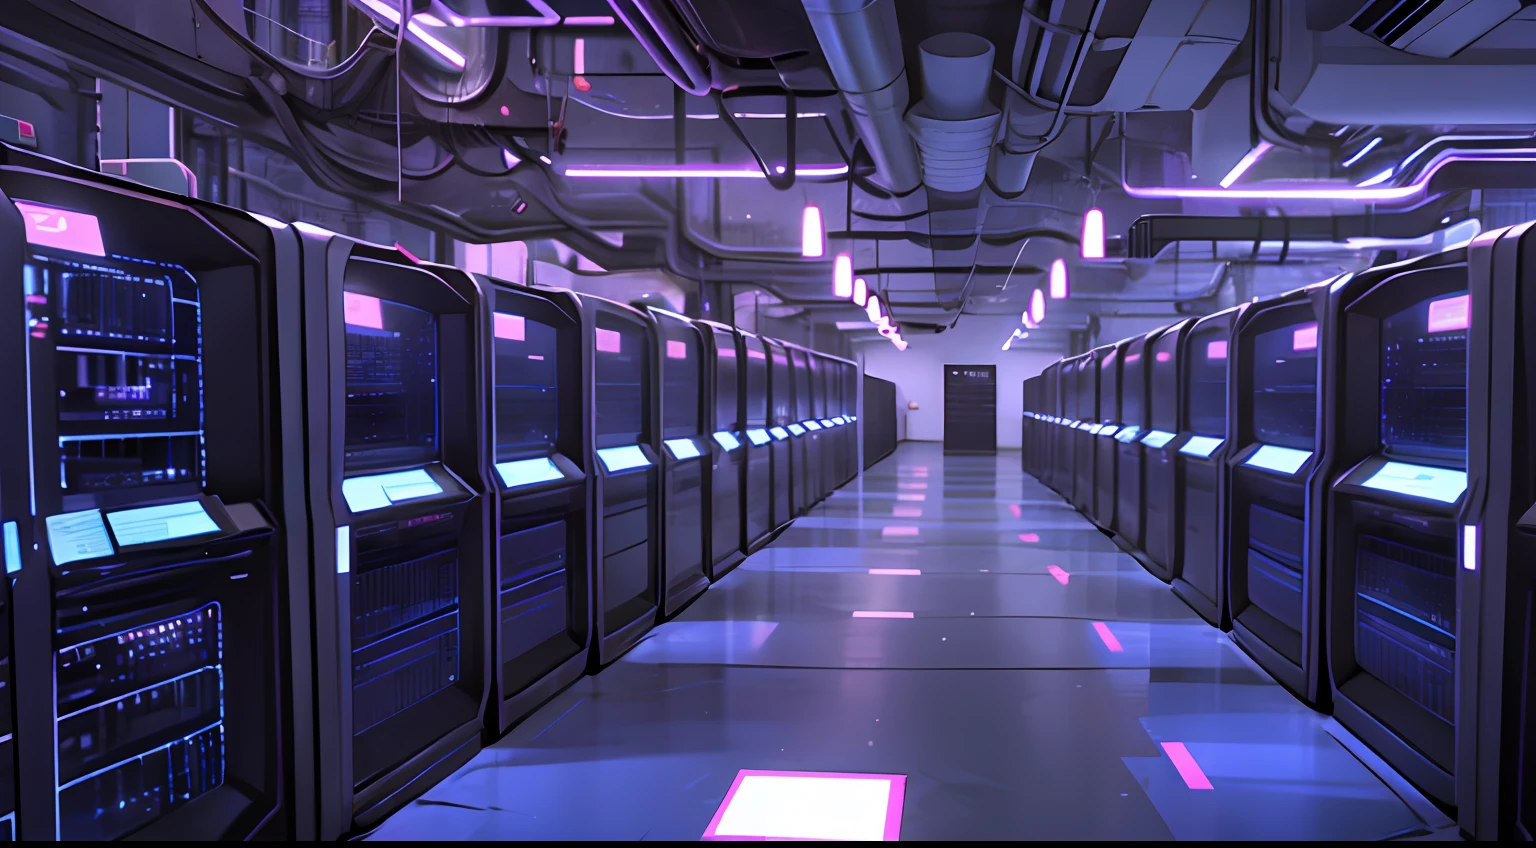 光线昏暗的走廊，有一排排数据、电脑屏幕和比特币符号, 背景是數據伺服器機房, 黑客没有大型机, 網路空間, em 数据中心现实, 3840x2160, 3840 x 2160, 西班牙中殿走廊基金, 網路架構, 超現實的網路空間, em 数据中心详情, darb azul luz azul 霓虹灯服务器技术